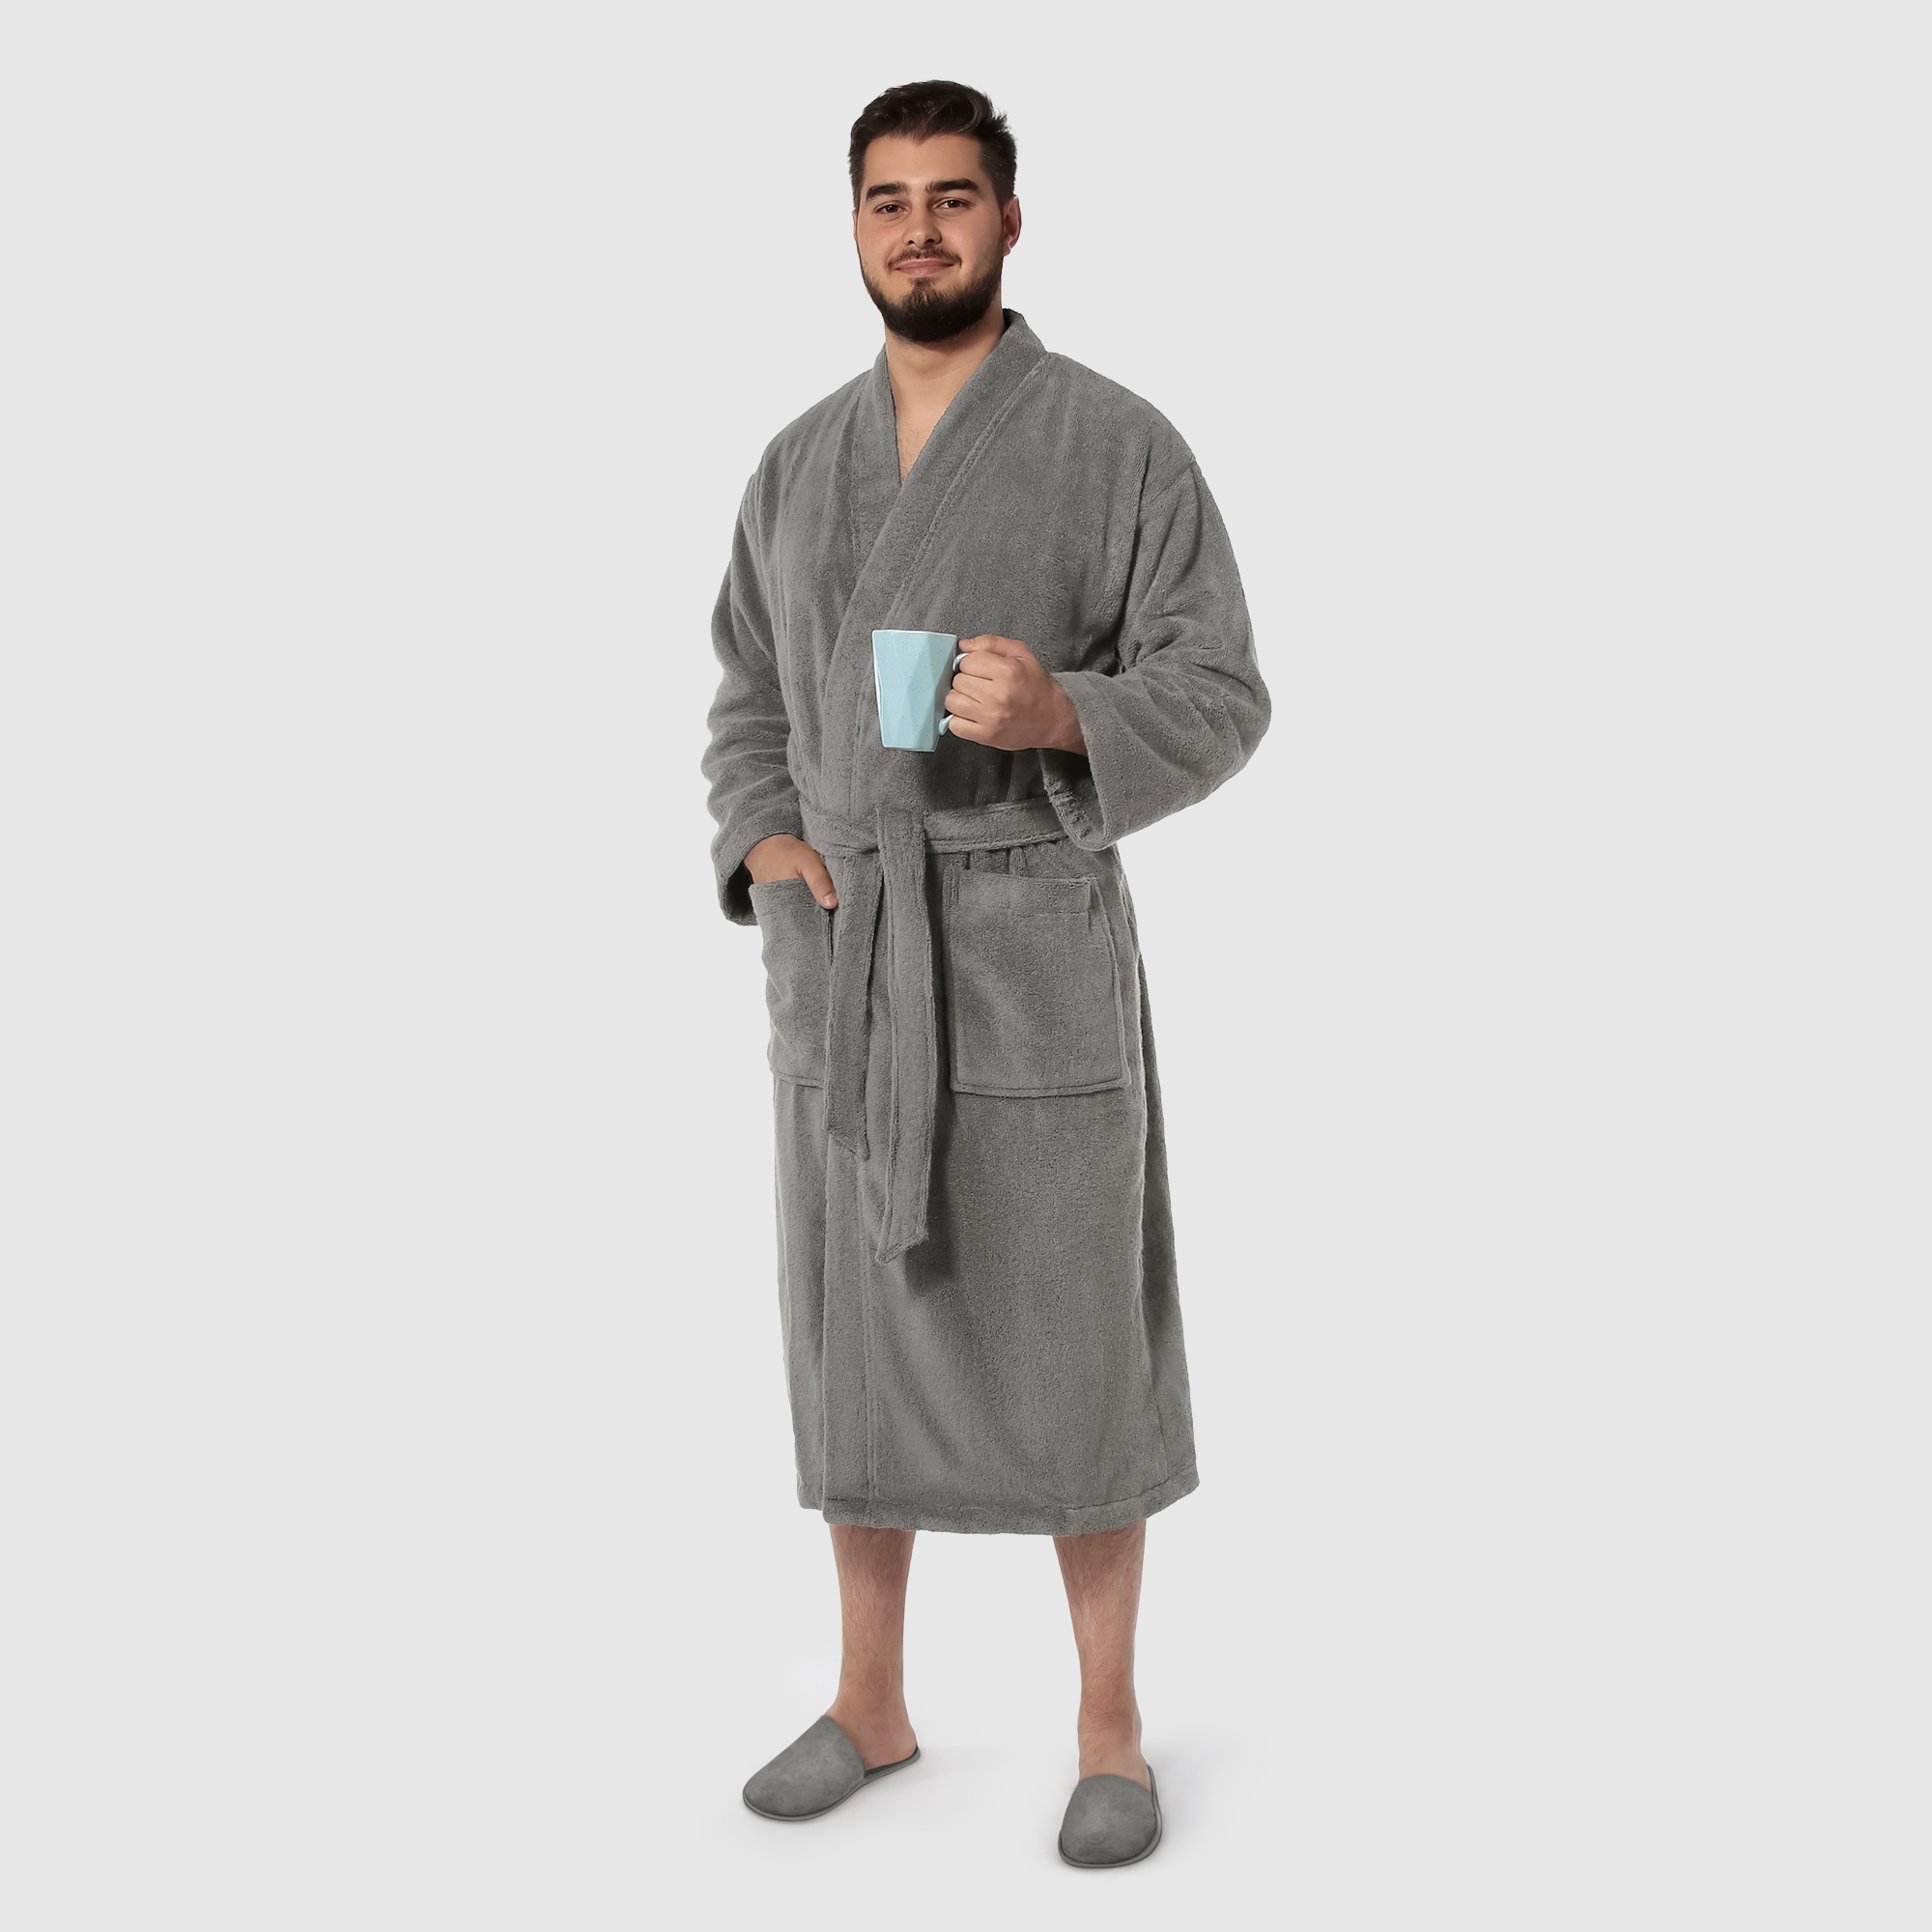 Мужской халат Maisonette Parla светло-серый XL халат мужской asil sauna brown xl махровый с капюшоном